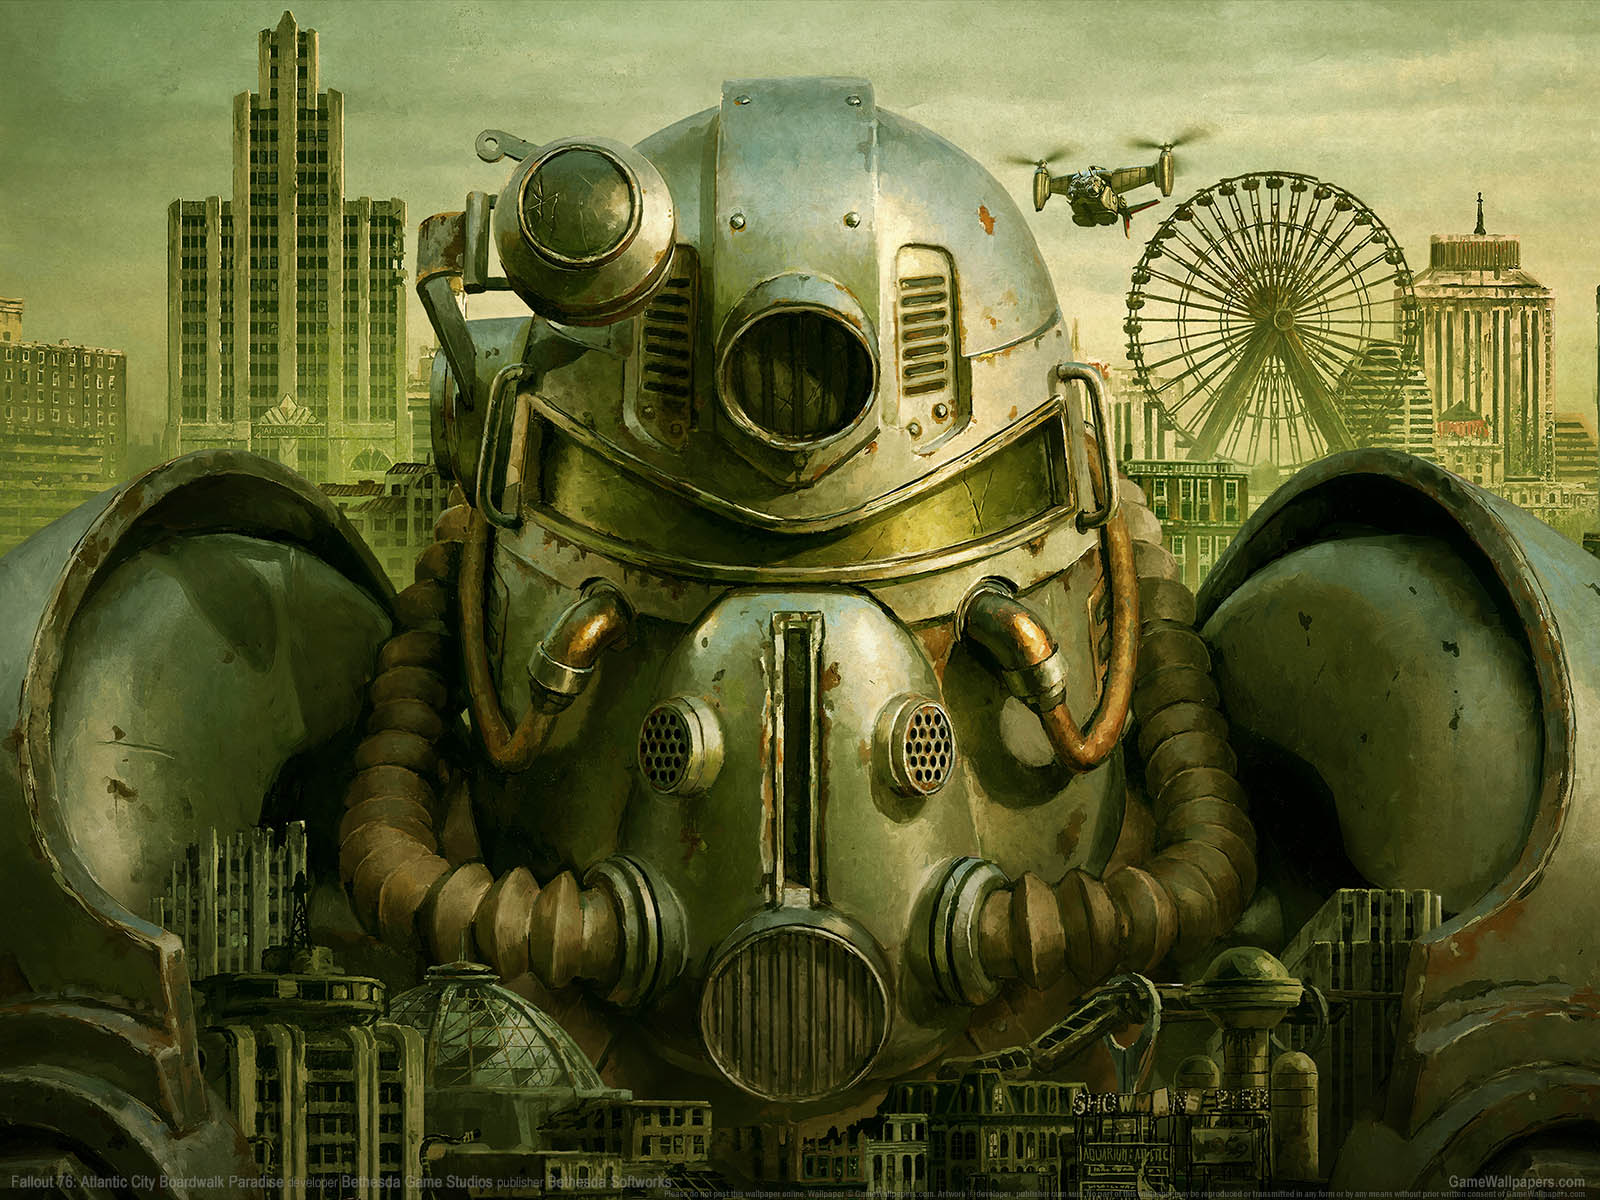 Fallout 76: Atlantic City Boardwalk Paradise fond d'cran 01 1600x1200